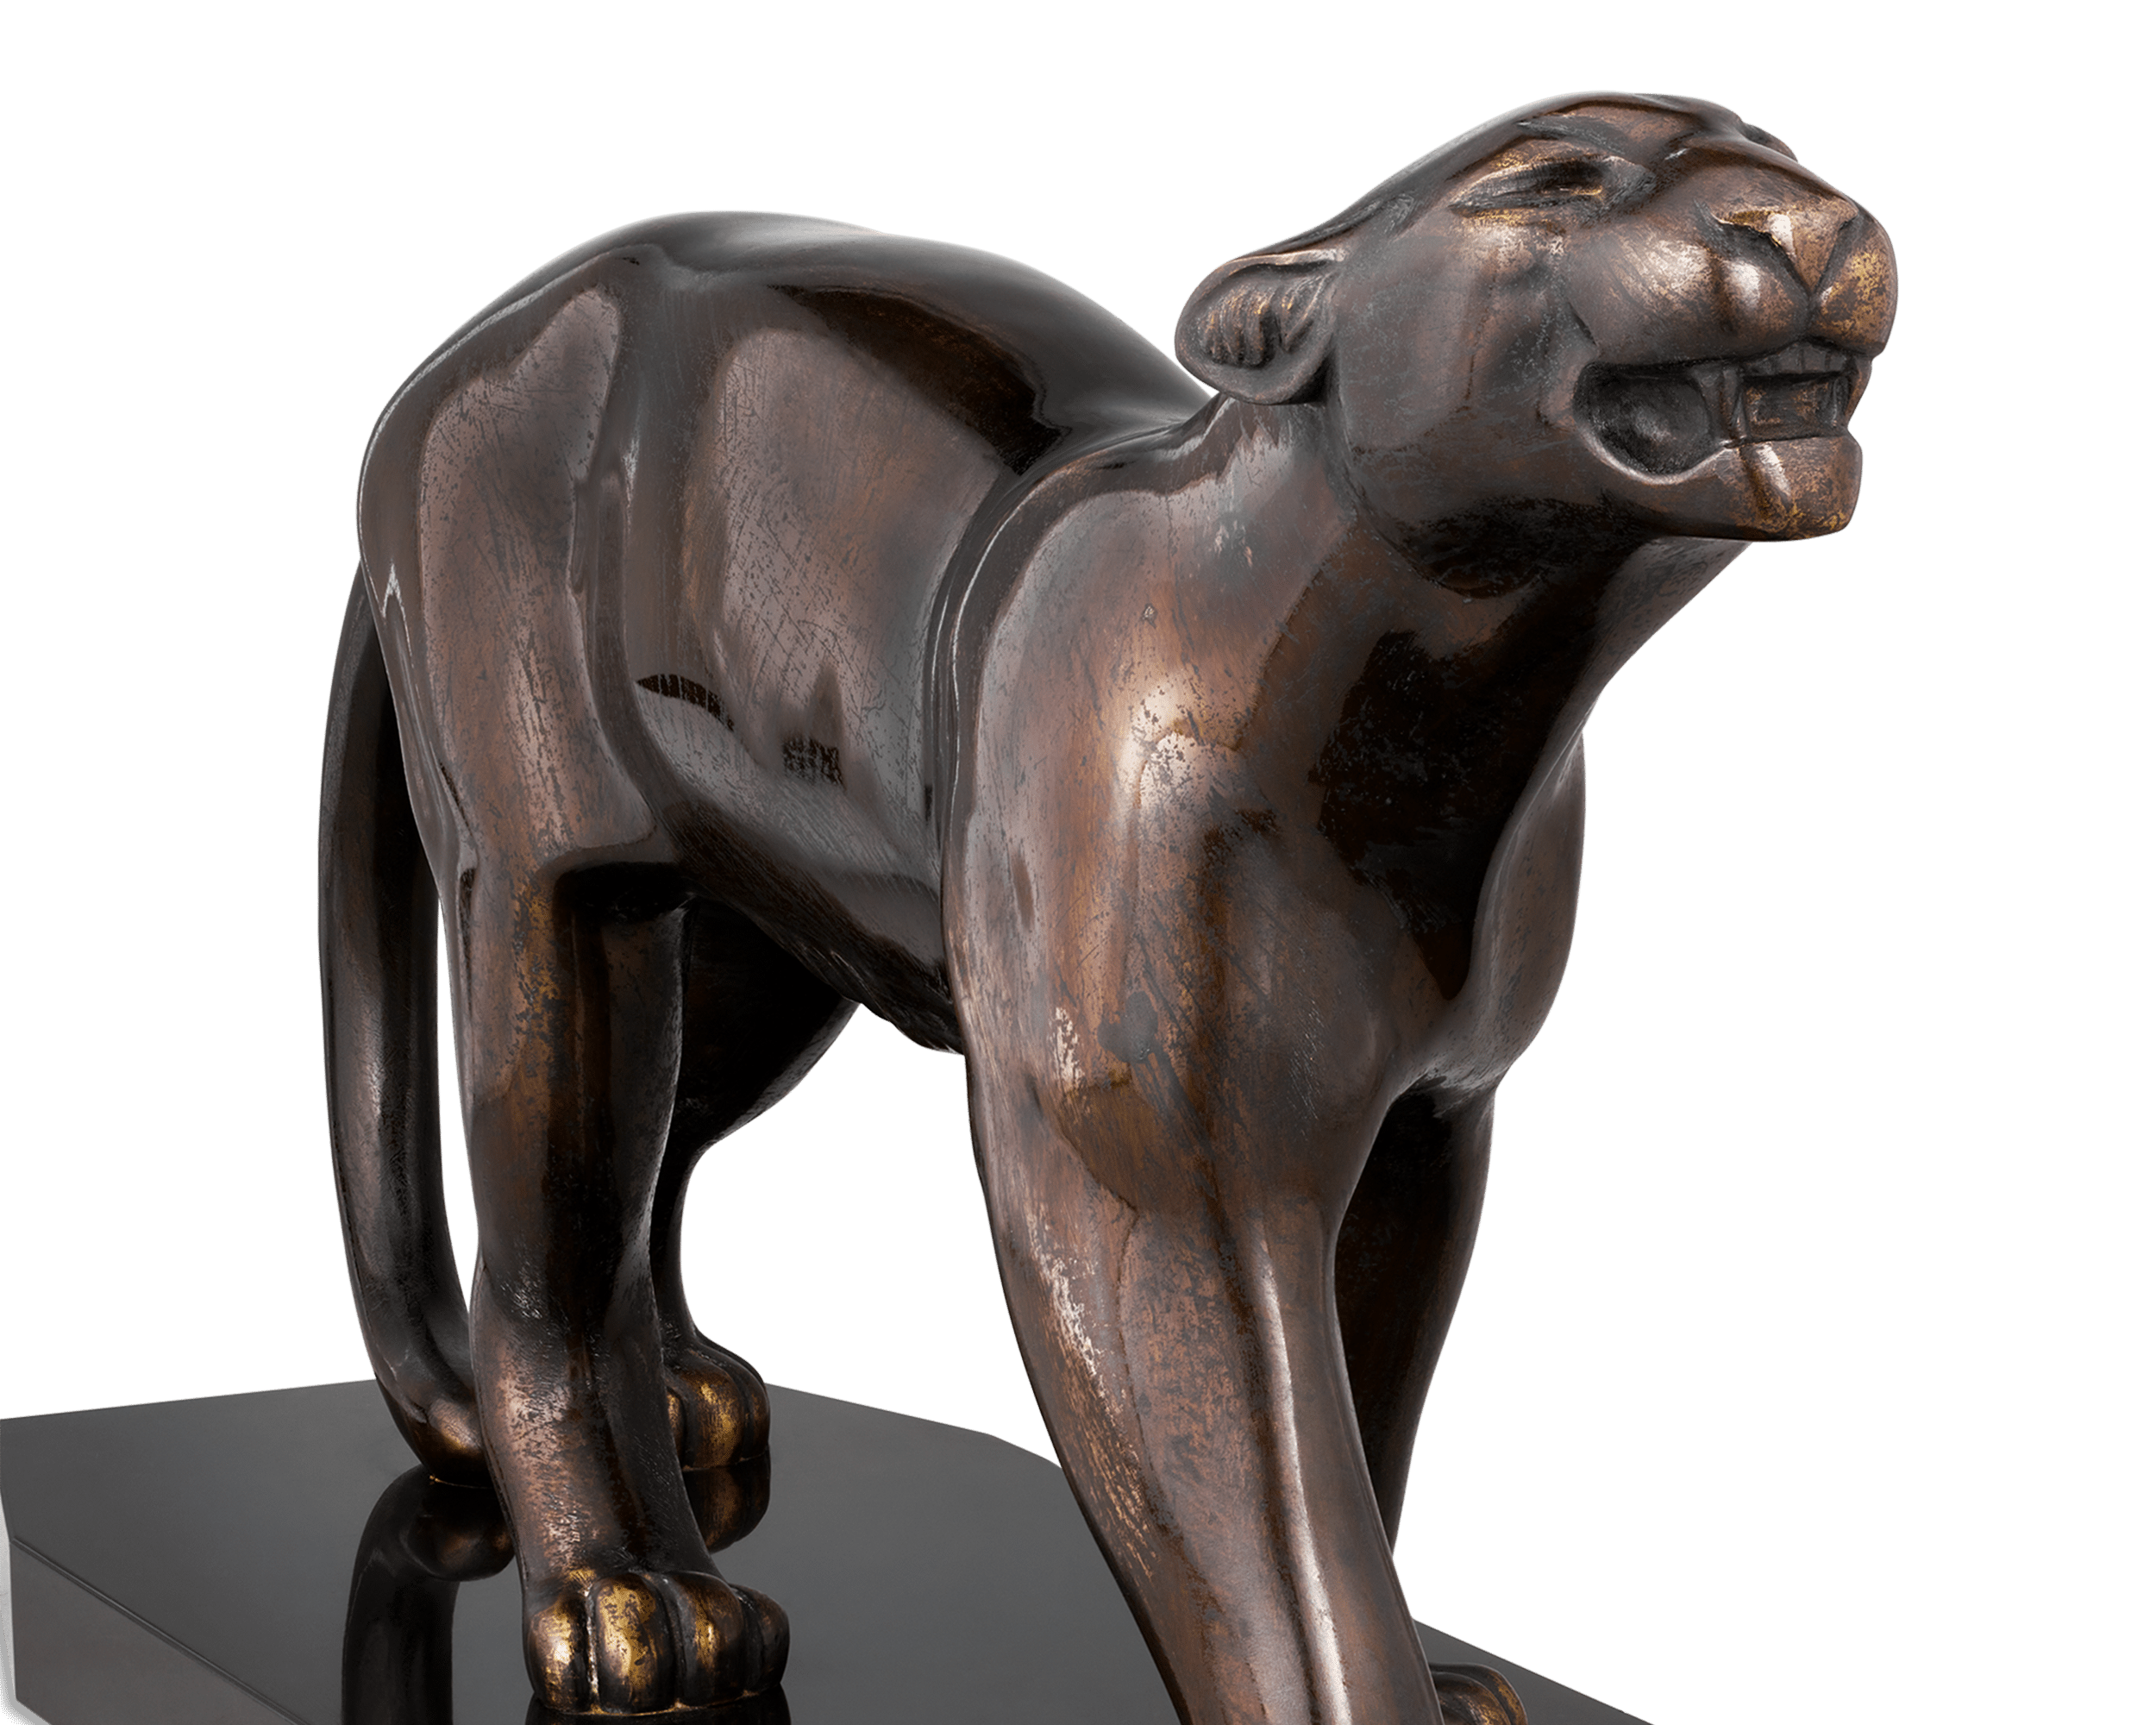 Panther by Émile Louis Bracquemond